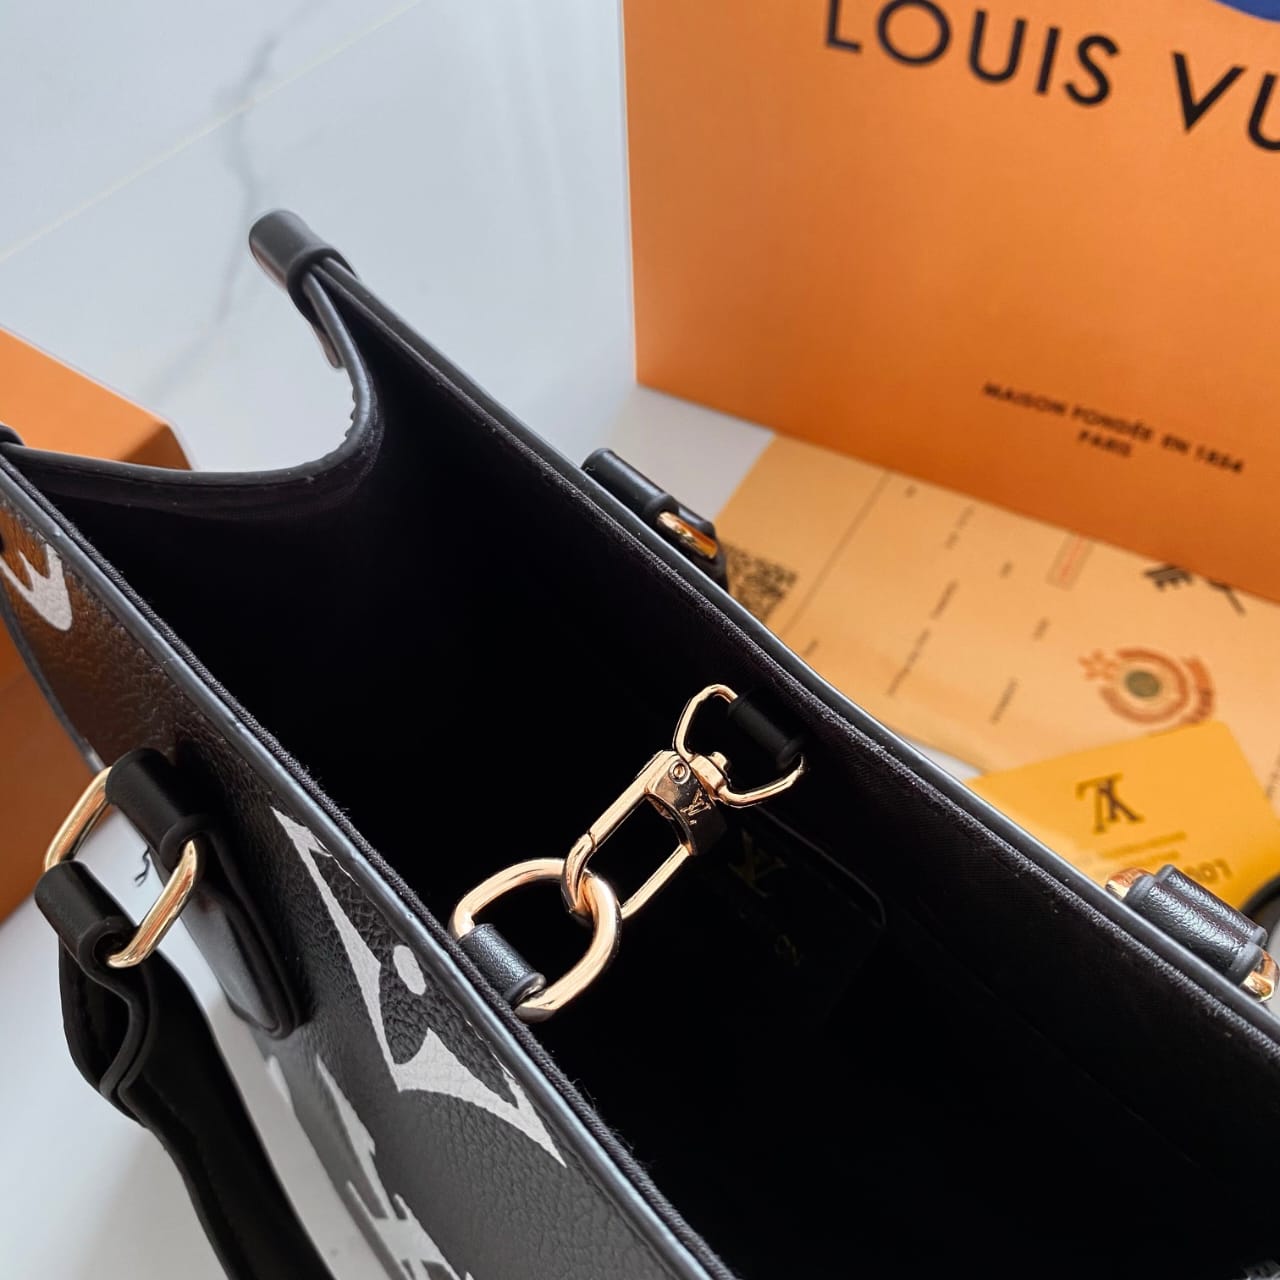 Louis vuitton onthego handbag